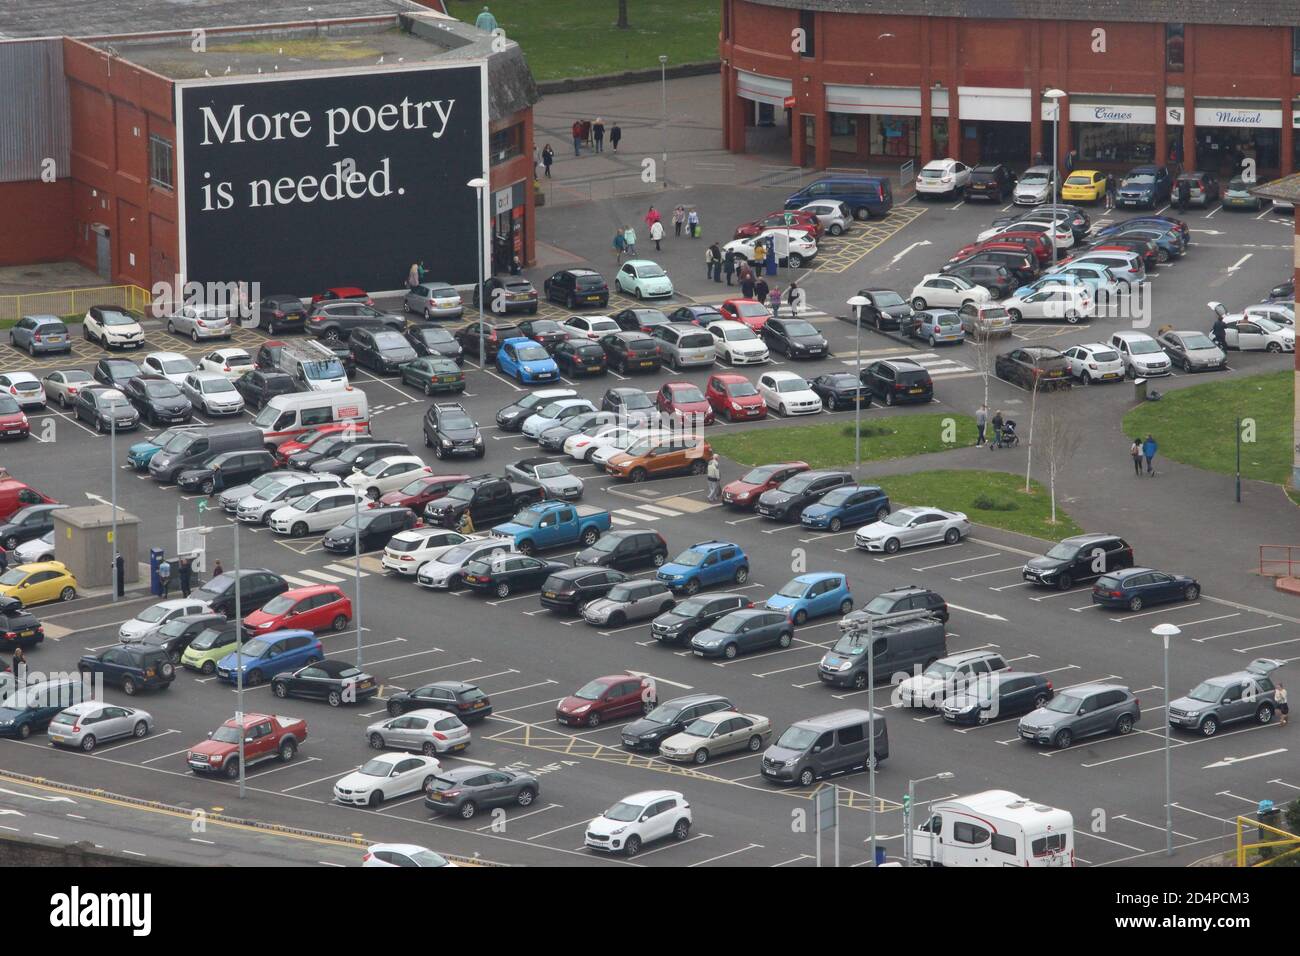 Una fotografia di un parcheggio pieno di veicoli, con una grande parete dipinta con la citazione "più poesia è necessaria". I graffiti dell'arte della Comunità ispirano le parole Foto Stock